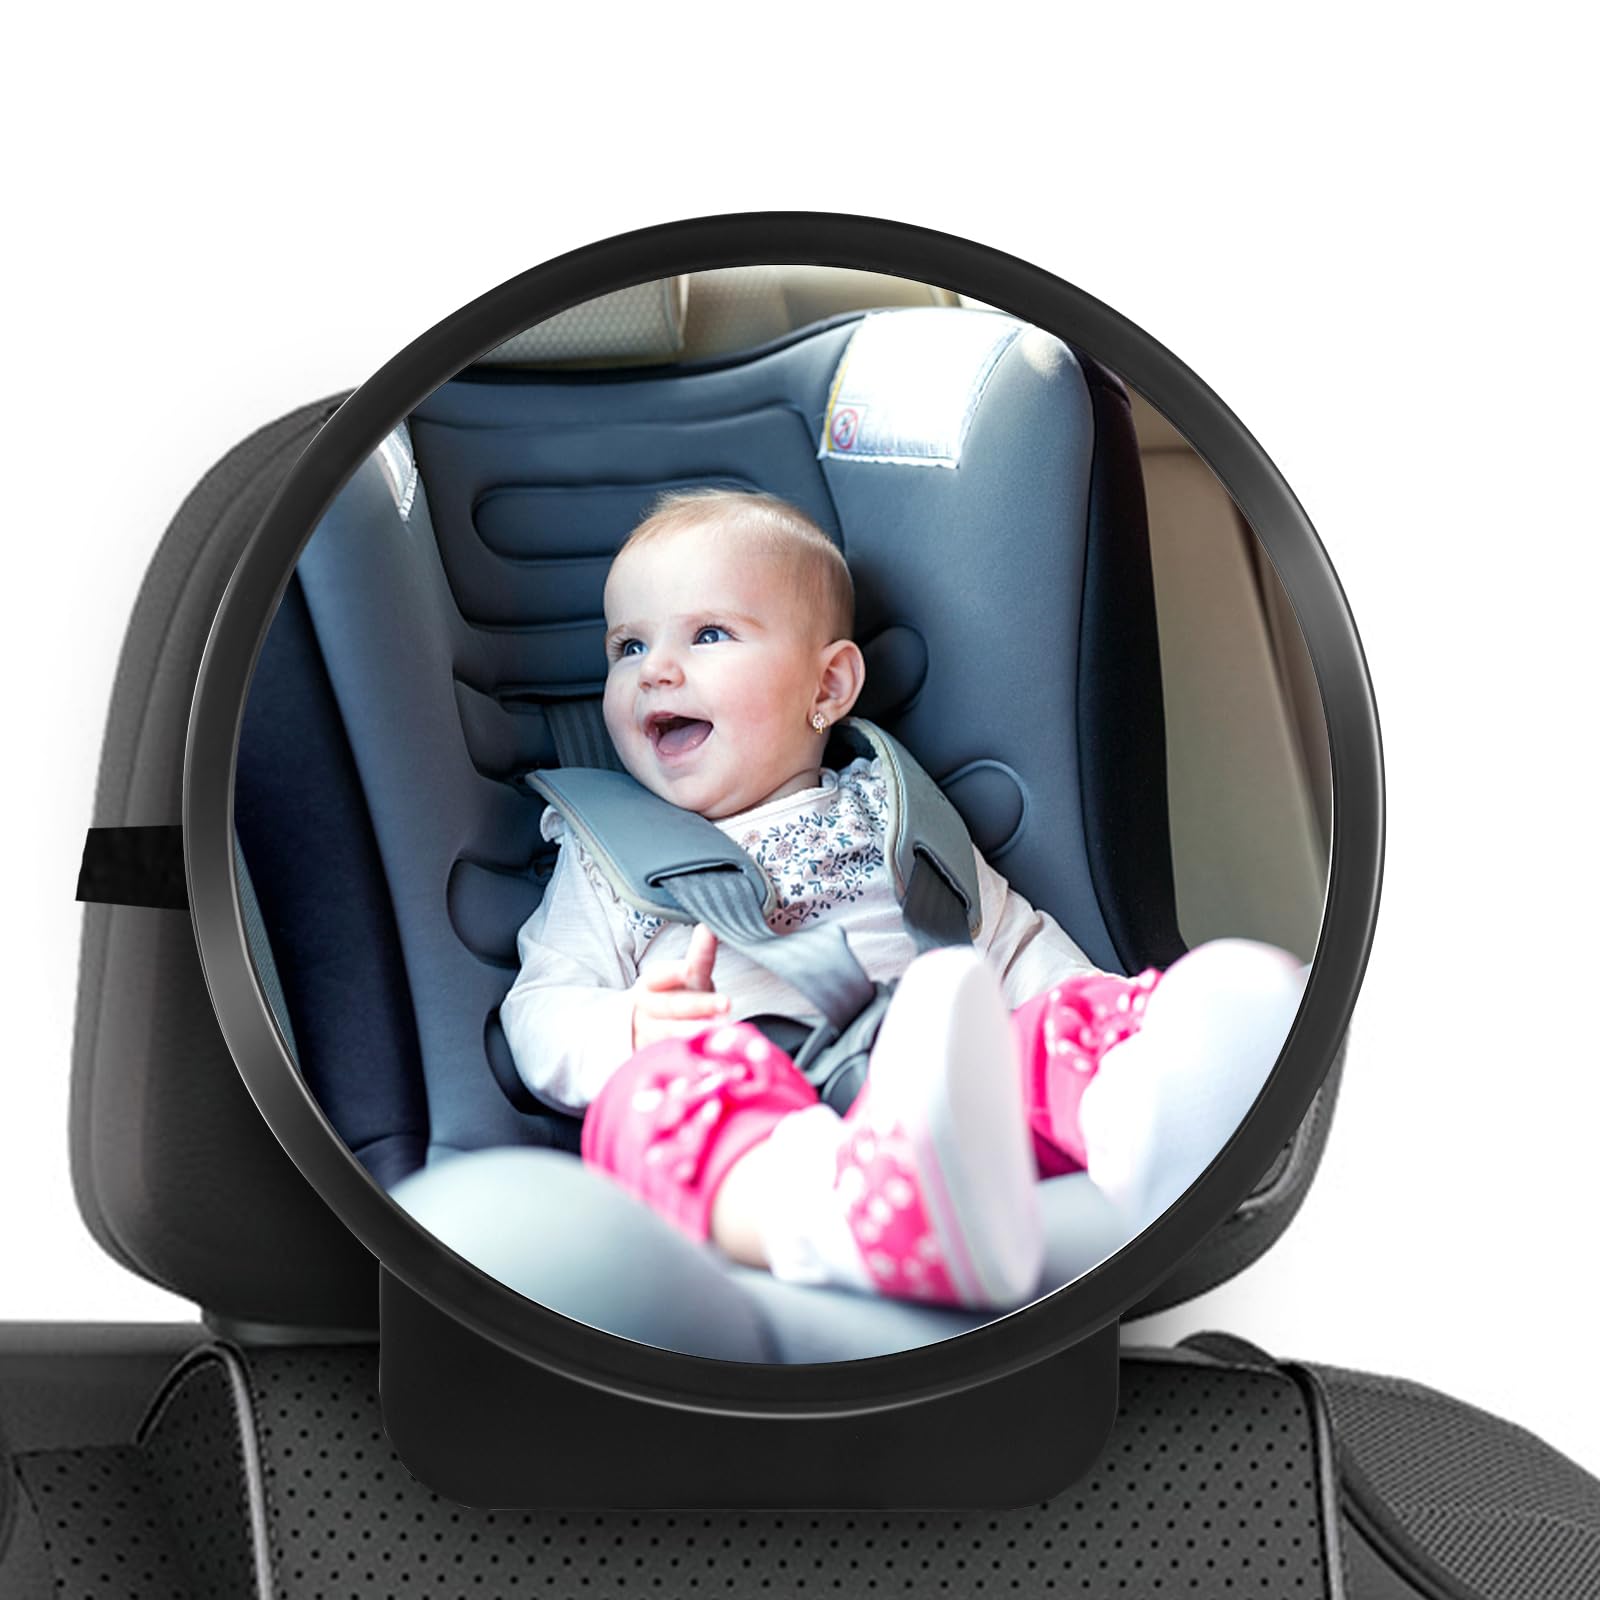 Kinder Autospiegel Rücksitz, Bruchsicherer Autospiegel Baby Rücksitz, Auto Rückspiegel für Kindersitz und Babyschale, Anpassbarer Autospiegel für Baby Rücksitz, 360° Schwenkbar Kinder Autospiegel von Vusddy